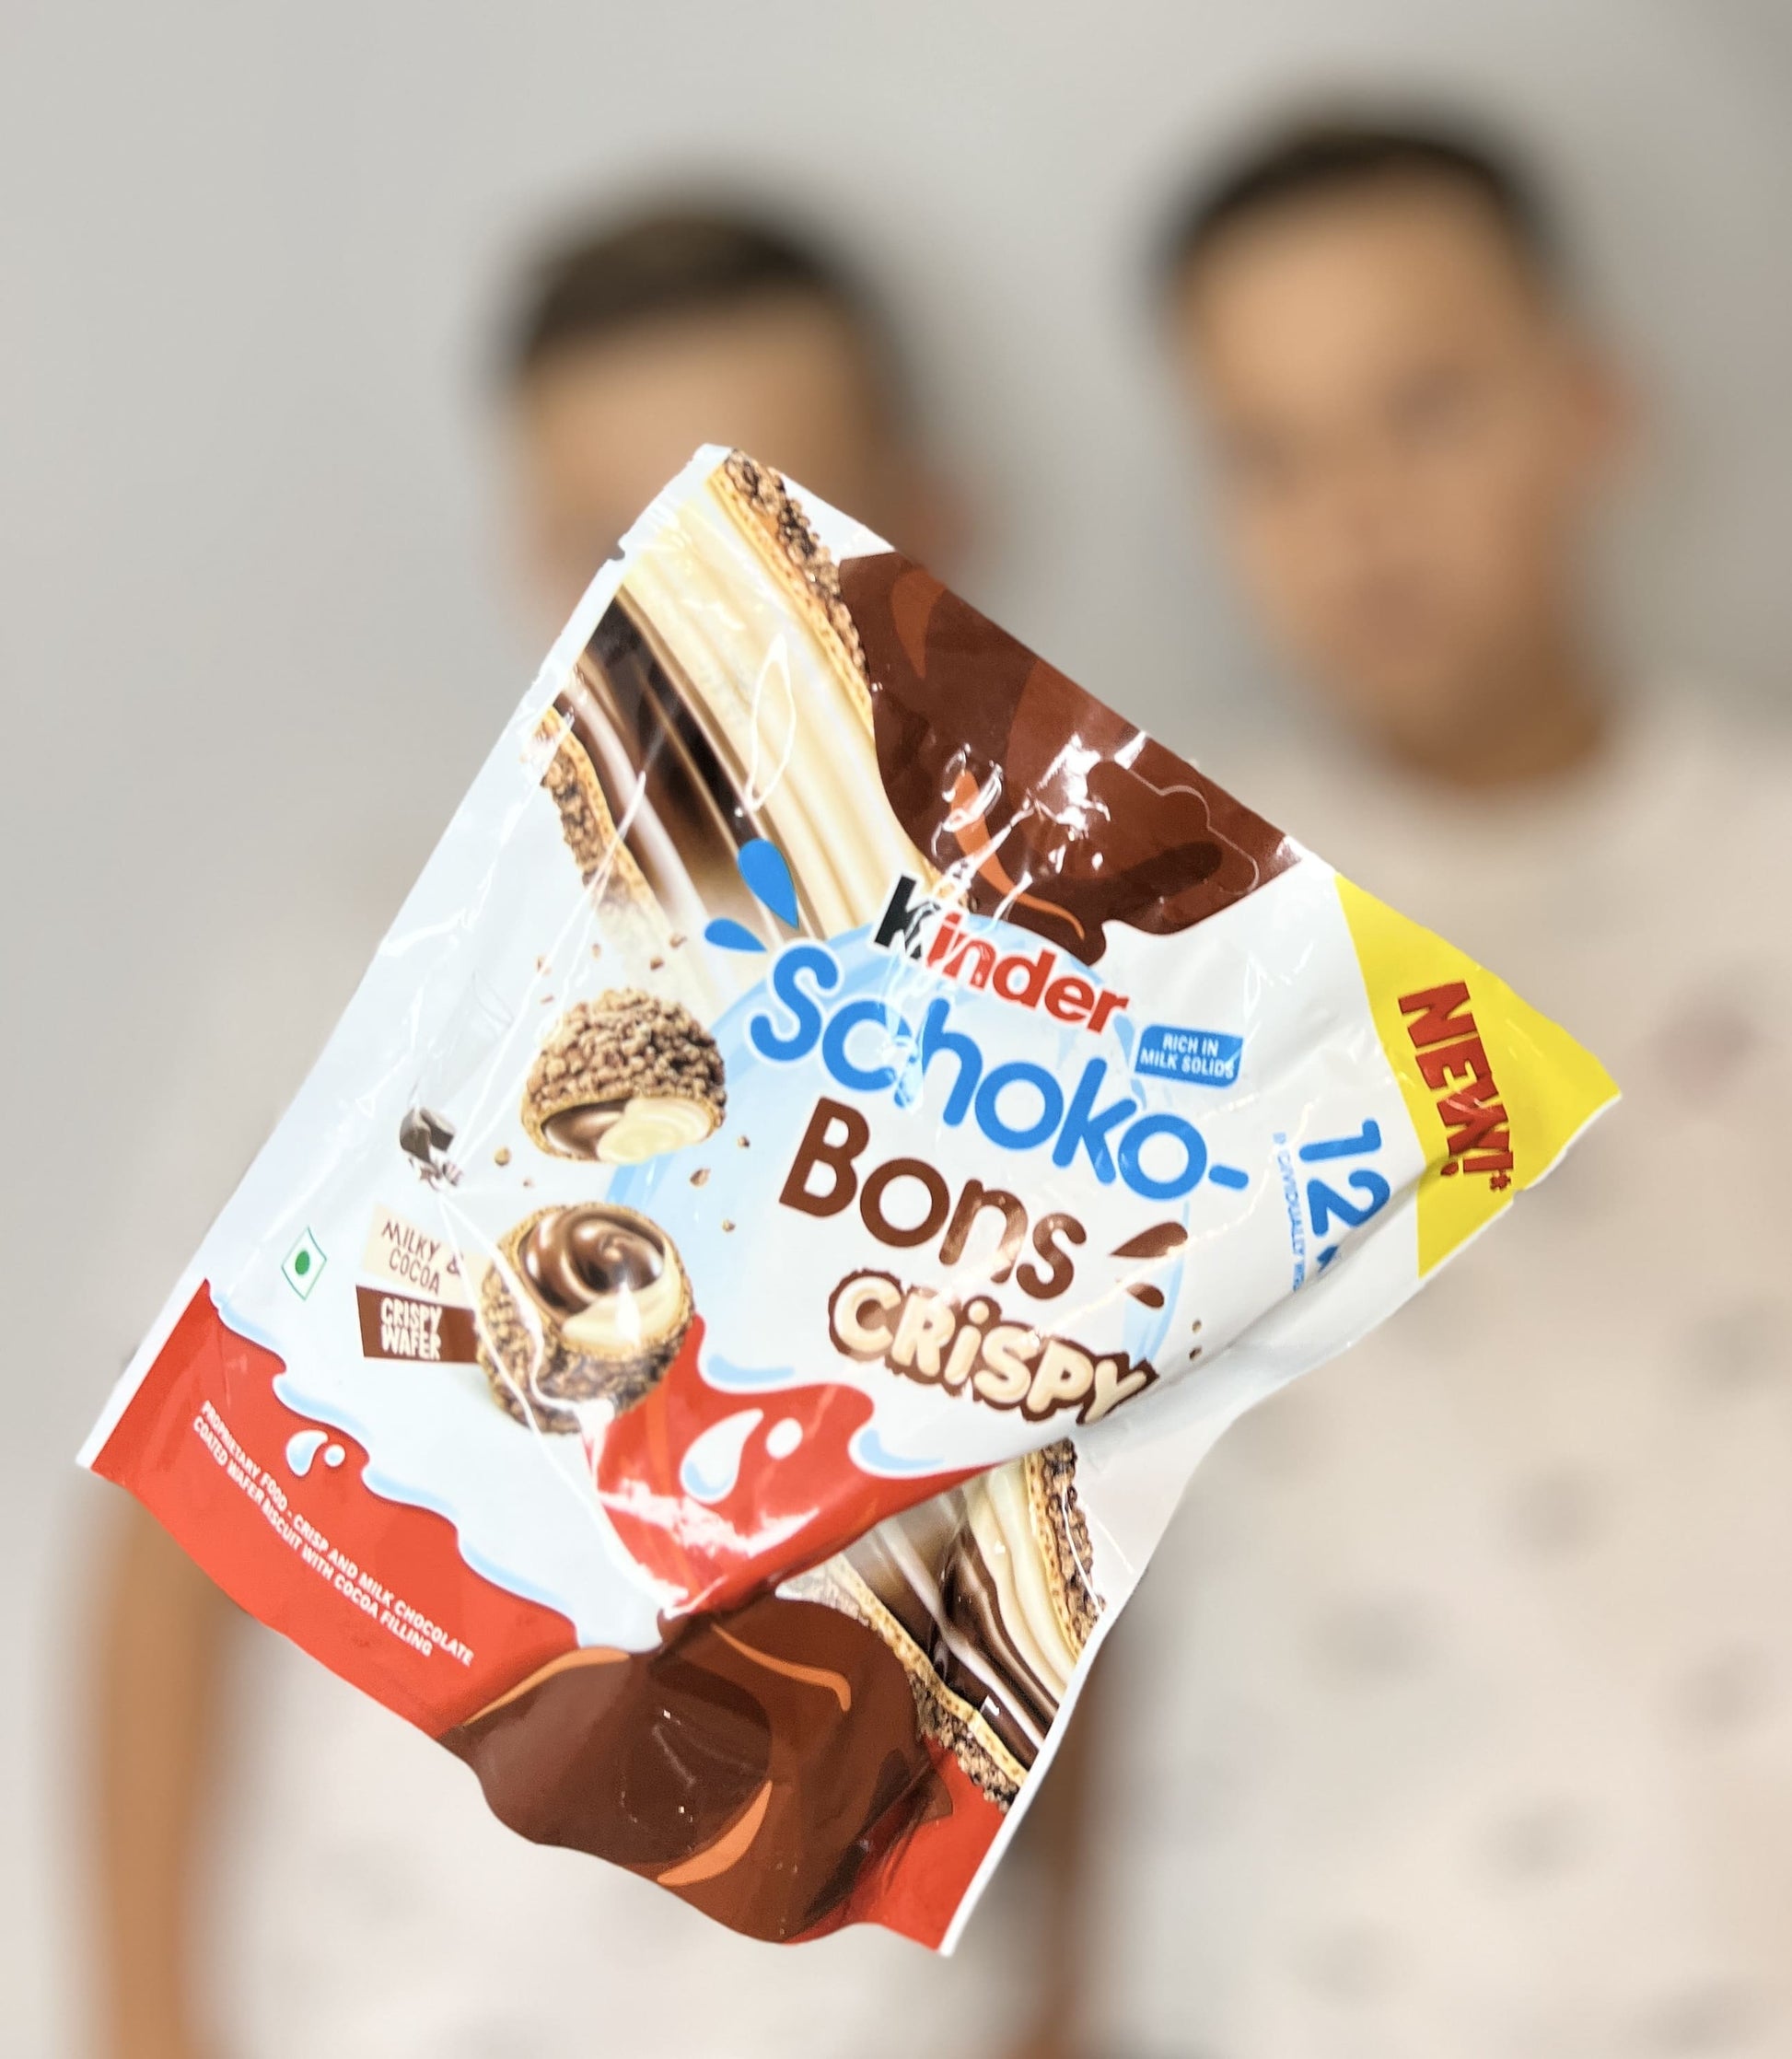 Köstliche Knusperperlen: Kinder Schoko Bons Crispy 67,2g aus Dubai - Zarte  Schokolade mit knuspriger Füllung! – CandyTwins